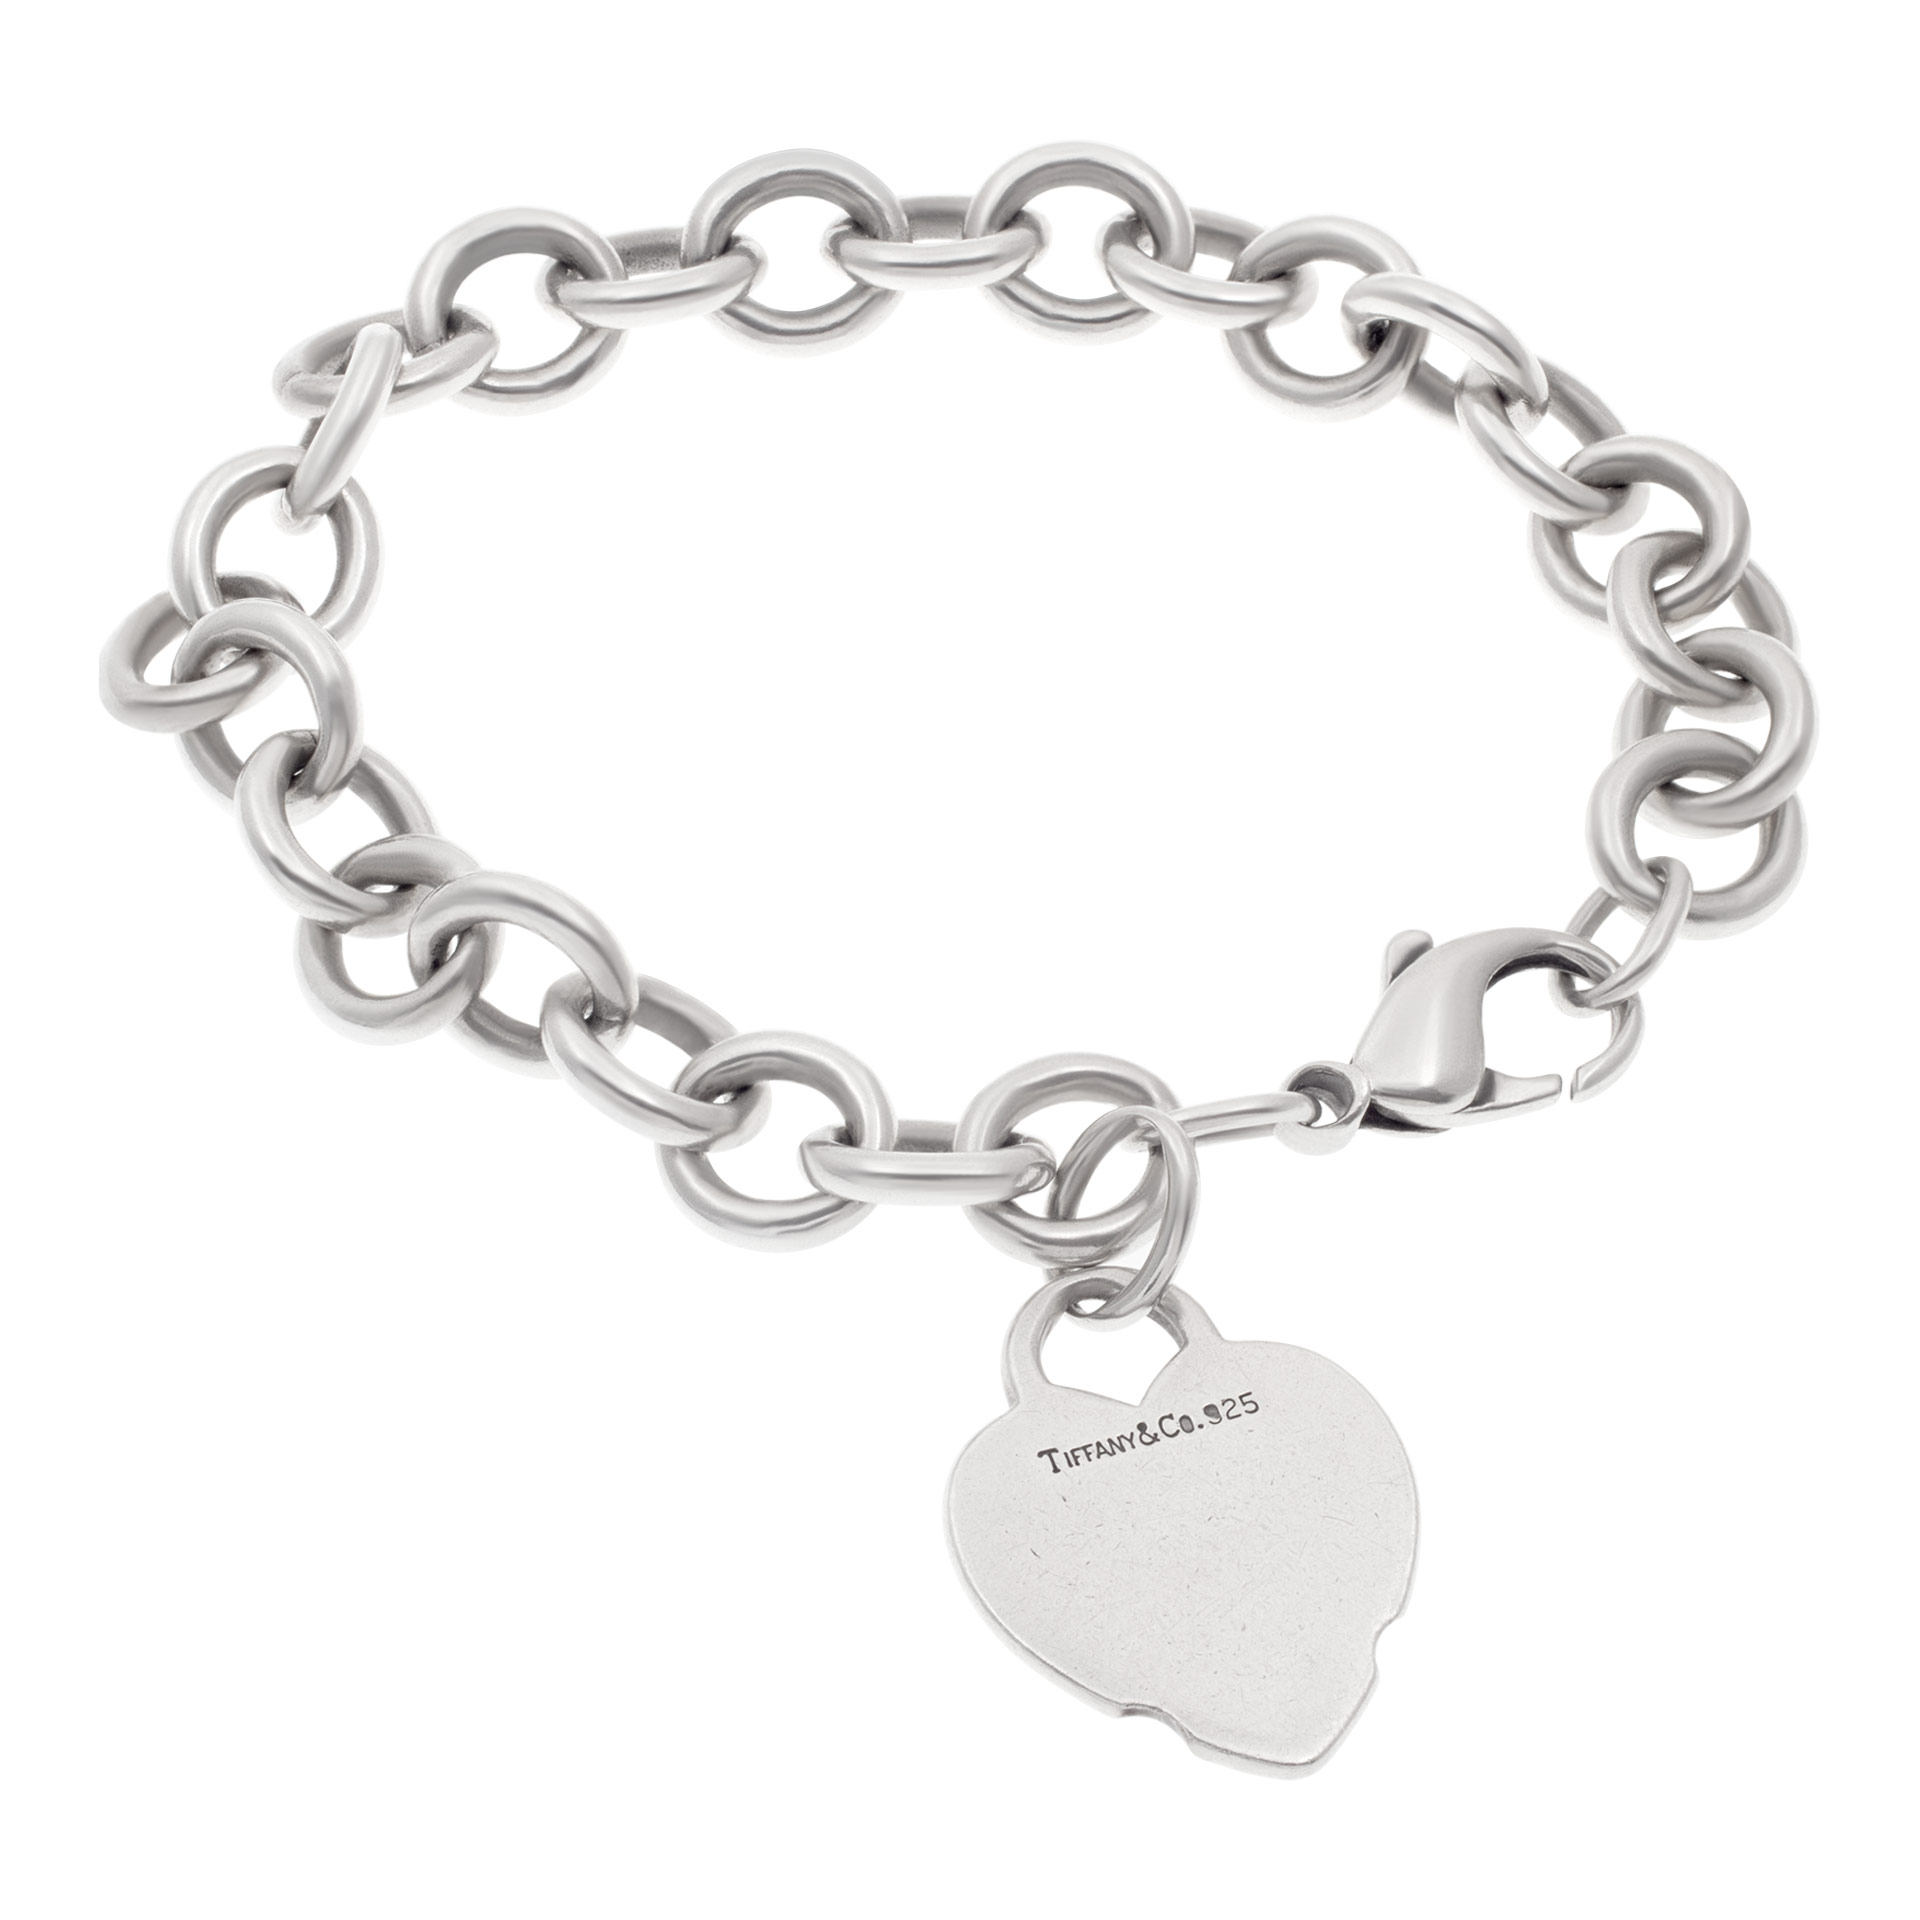 Tiffany & Co heart chain bracelet in sterling silver image 1